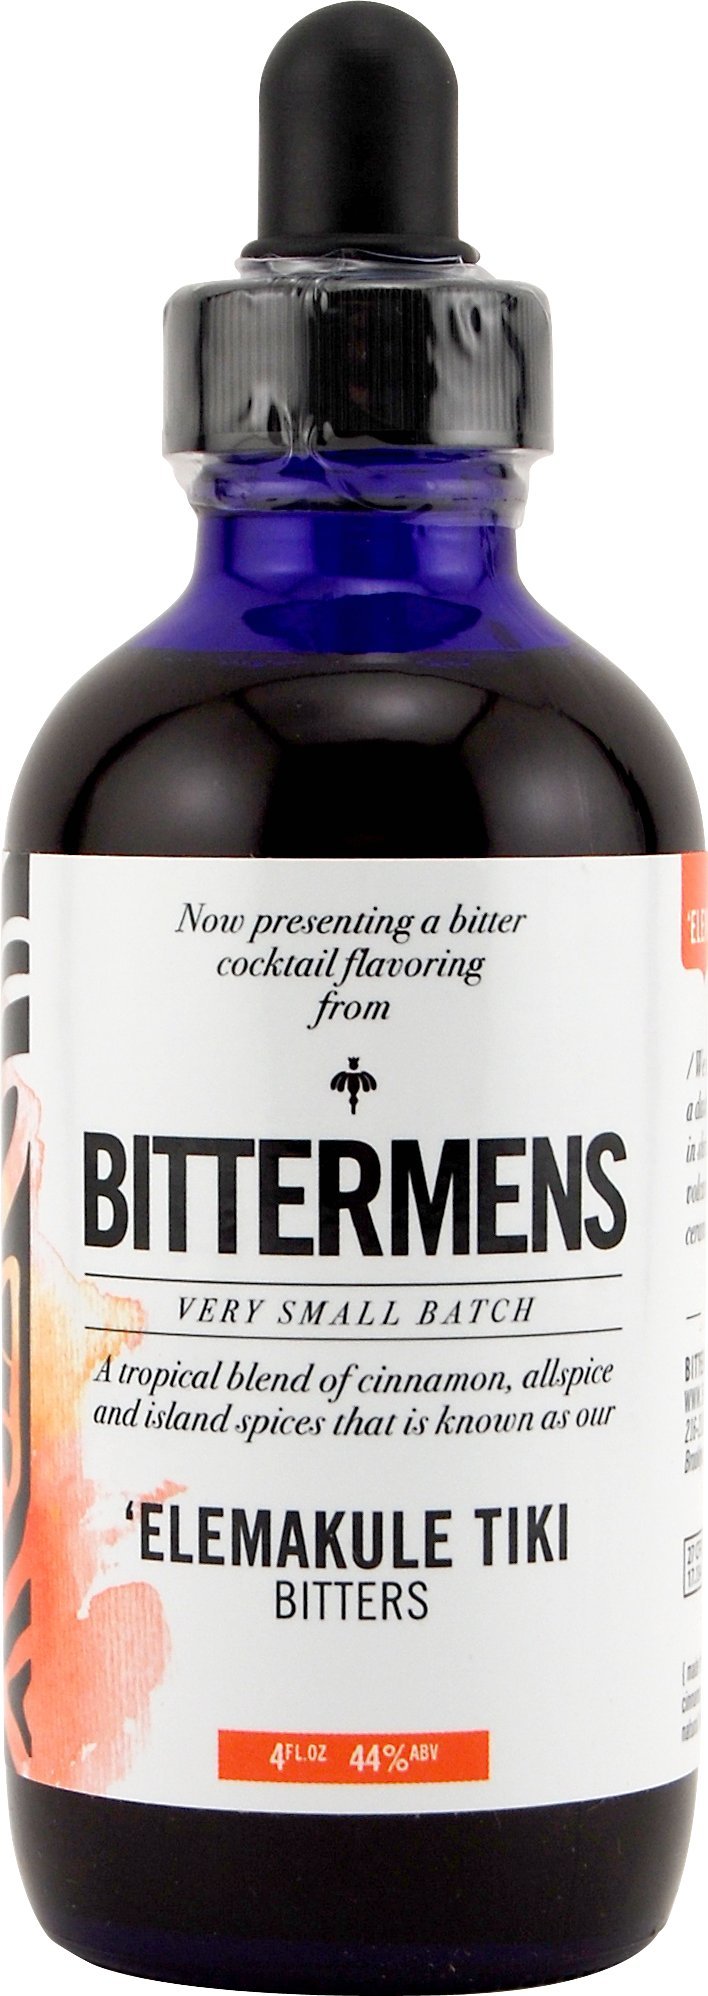 Bittermens Tiki Bitters